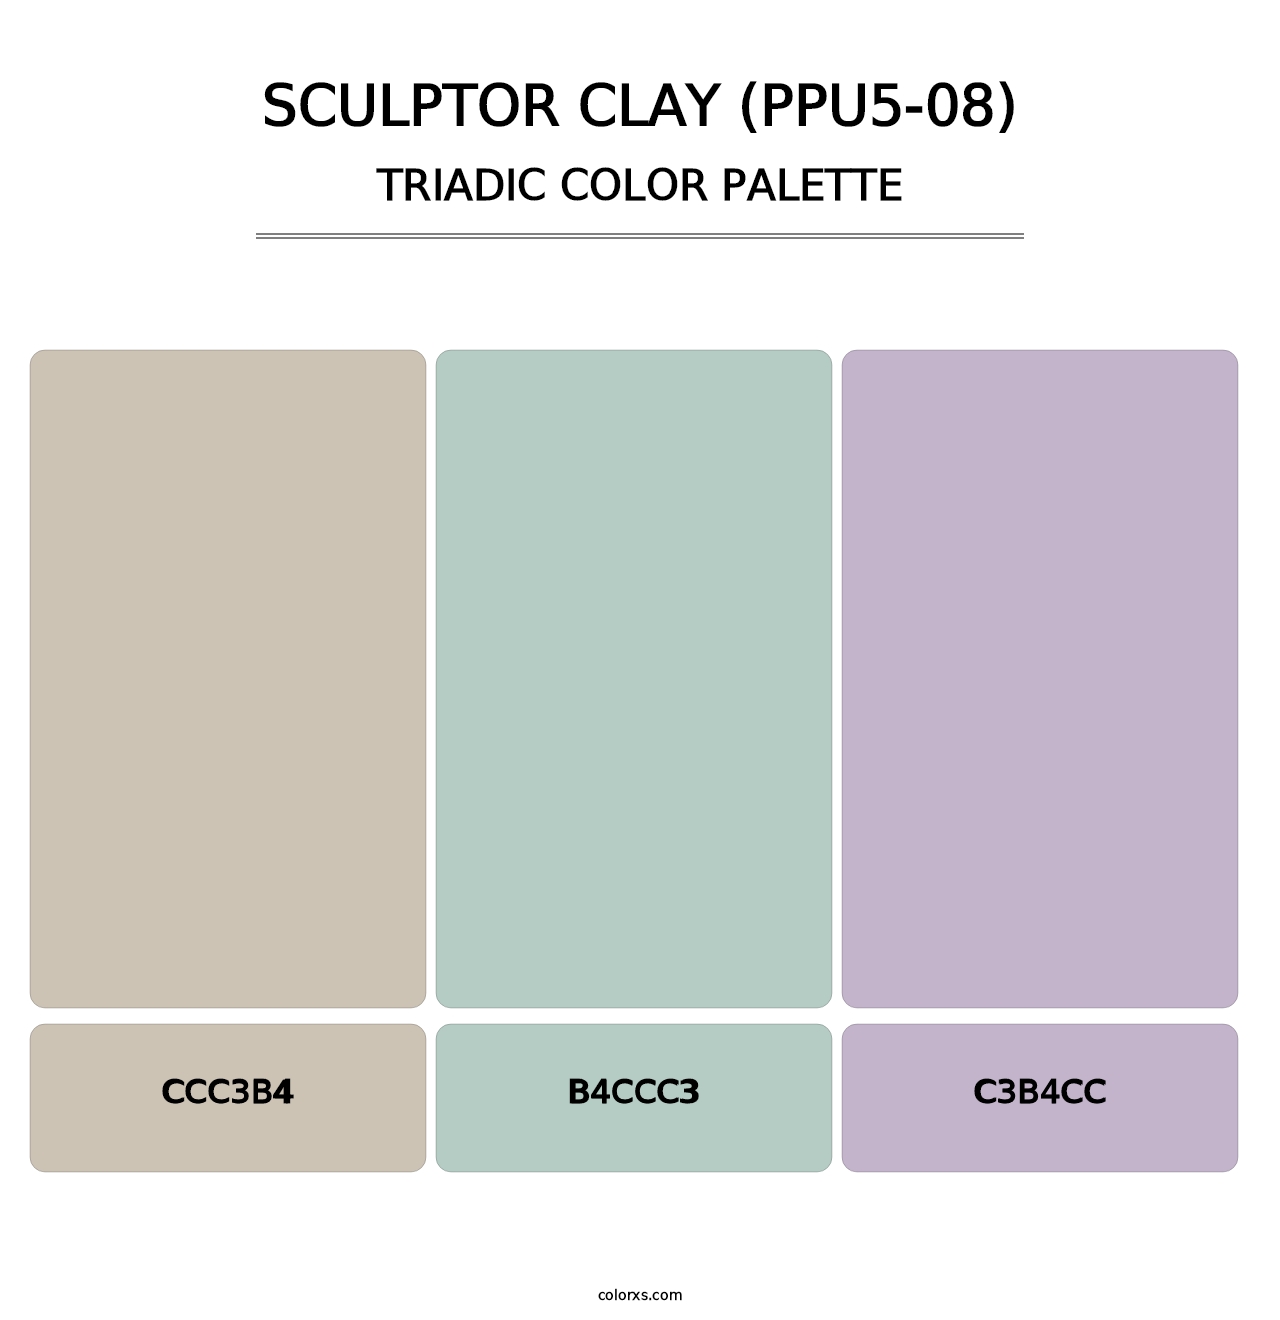 Sculptor Clay (PPU5-08) - Triadic Color Palette